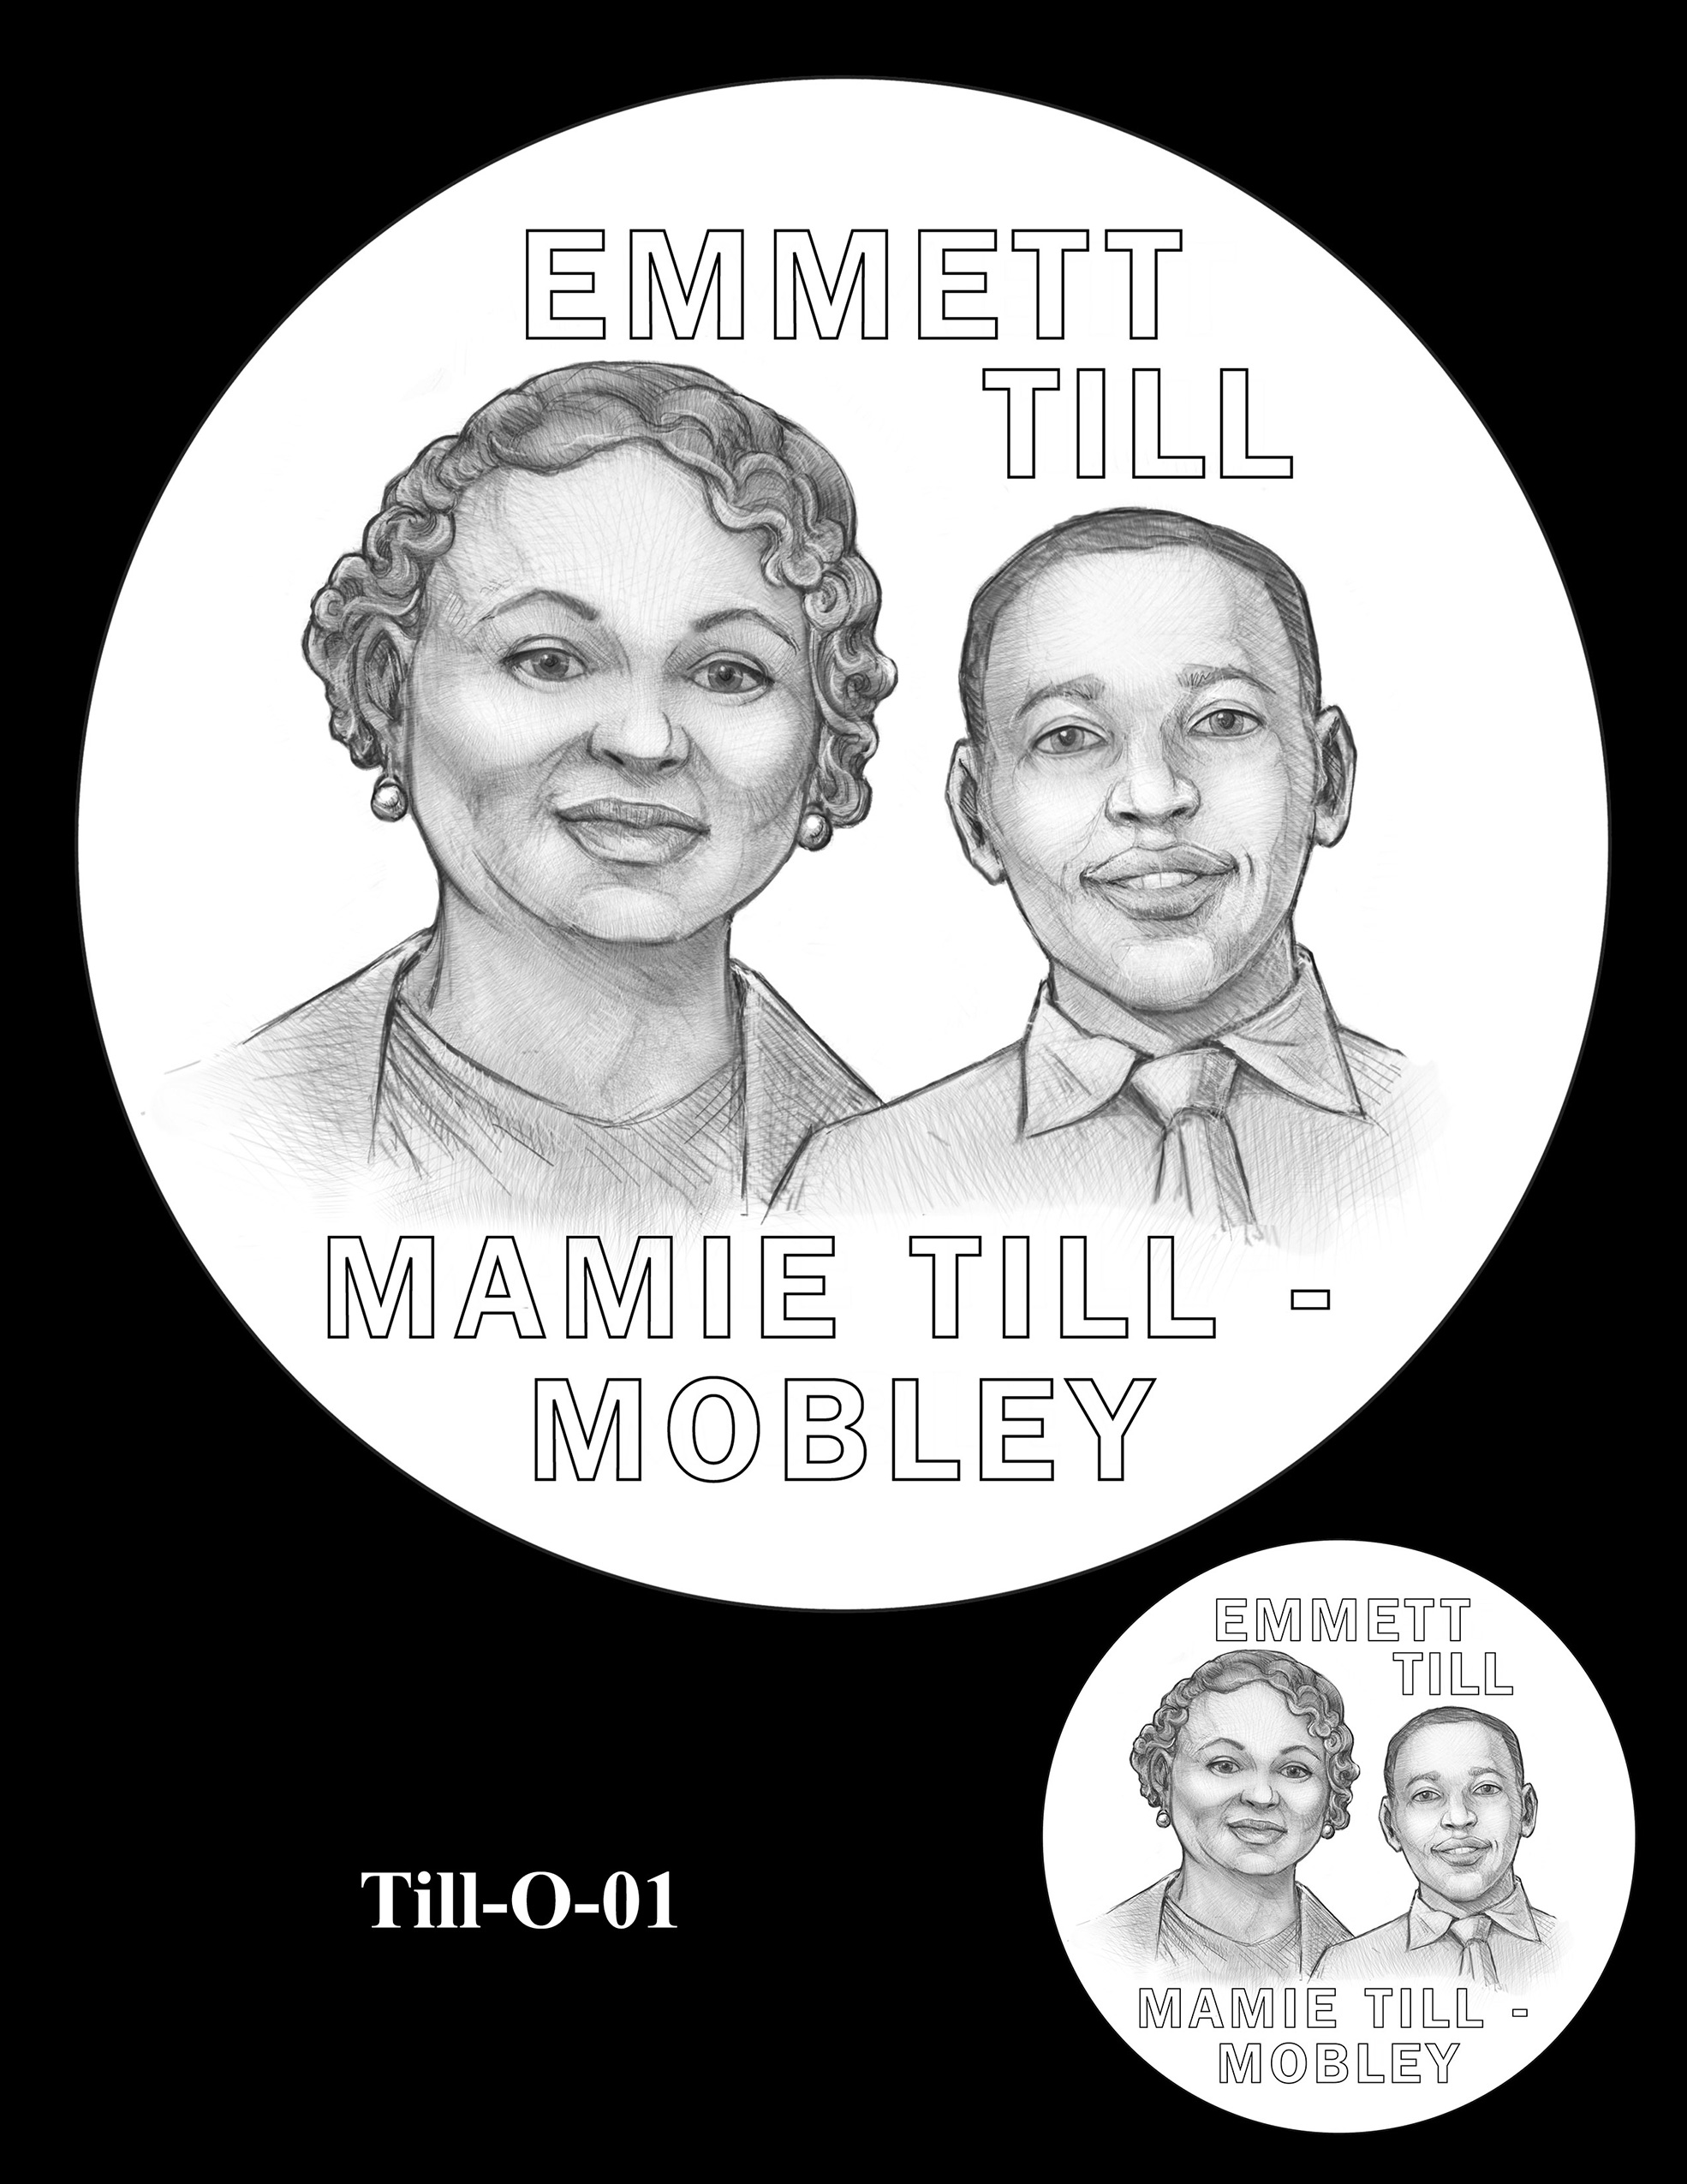 Till-O-01 -- Emmett Till and Mamie Till Mobley Congressional Gold Medal